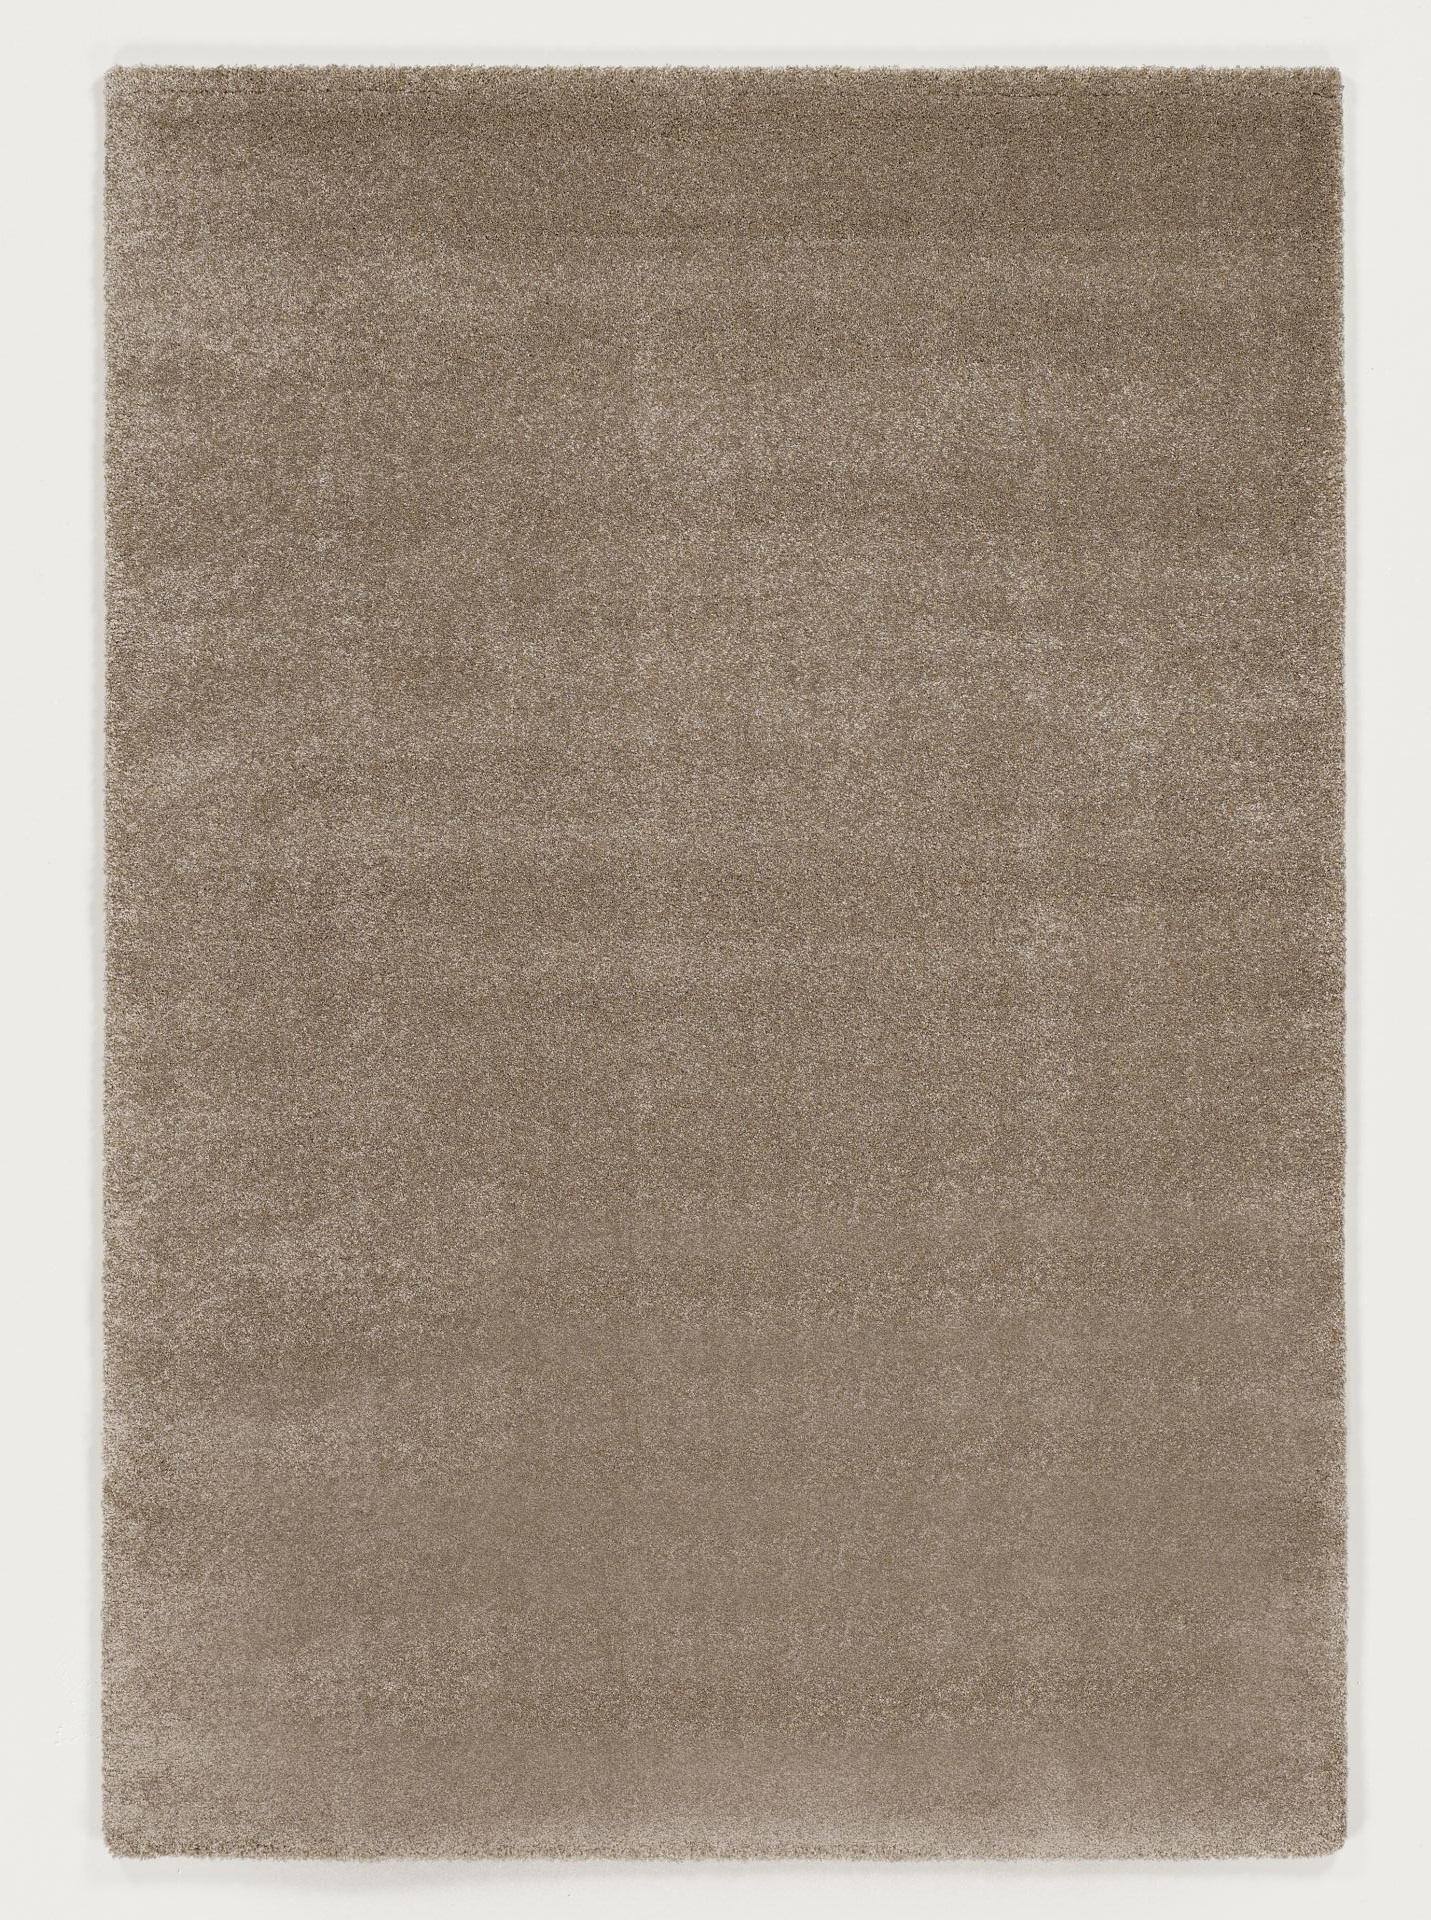 HOCHFLORTEPPICH 65/130 cm Bellevue  - Beige, Basics, Textil (65/130cm) - Novel